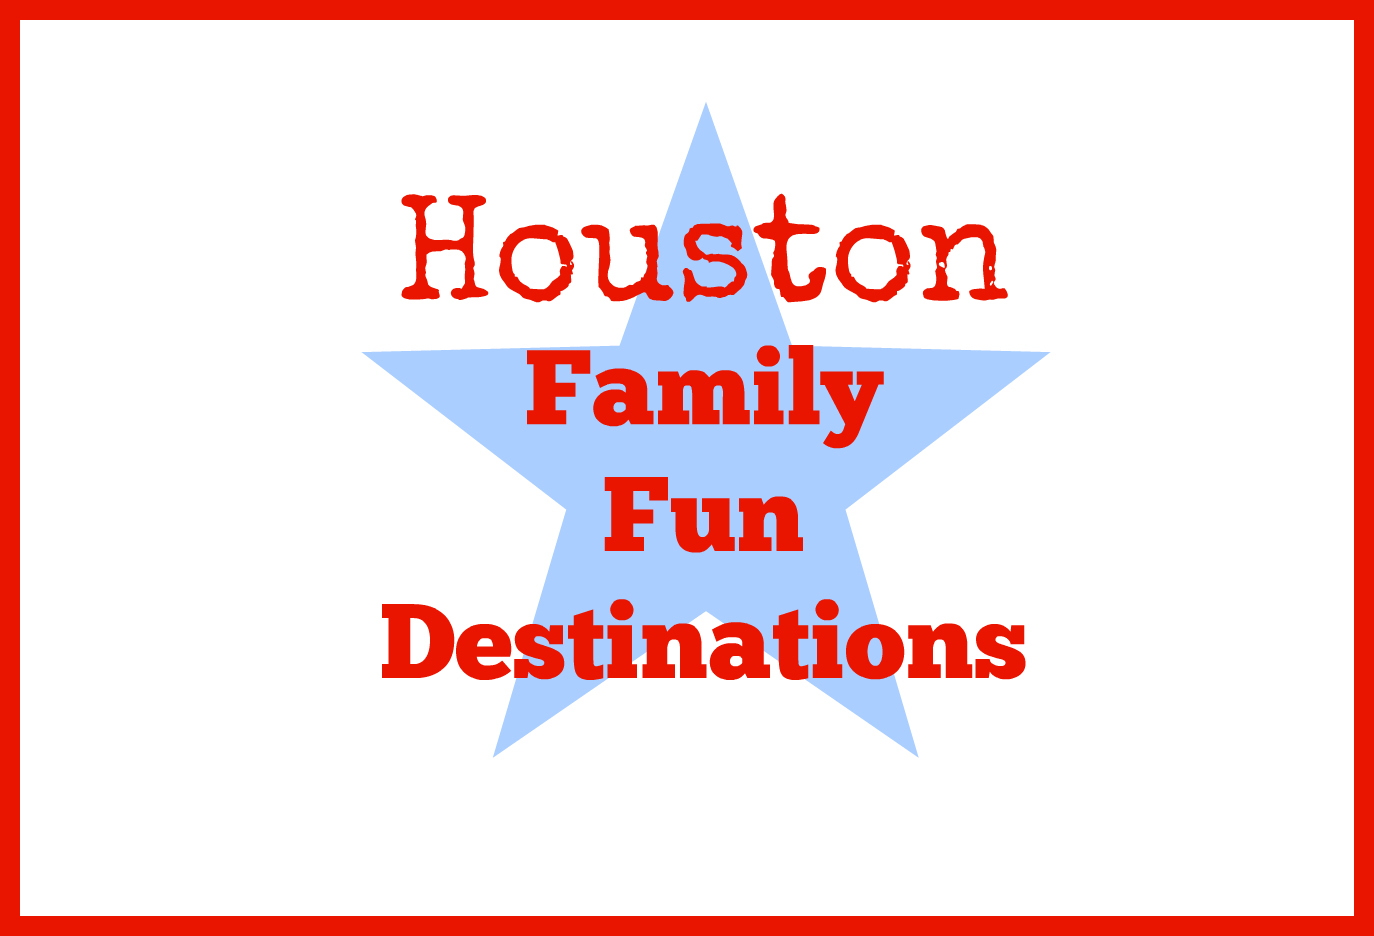 Houston family fun destinations